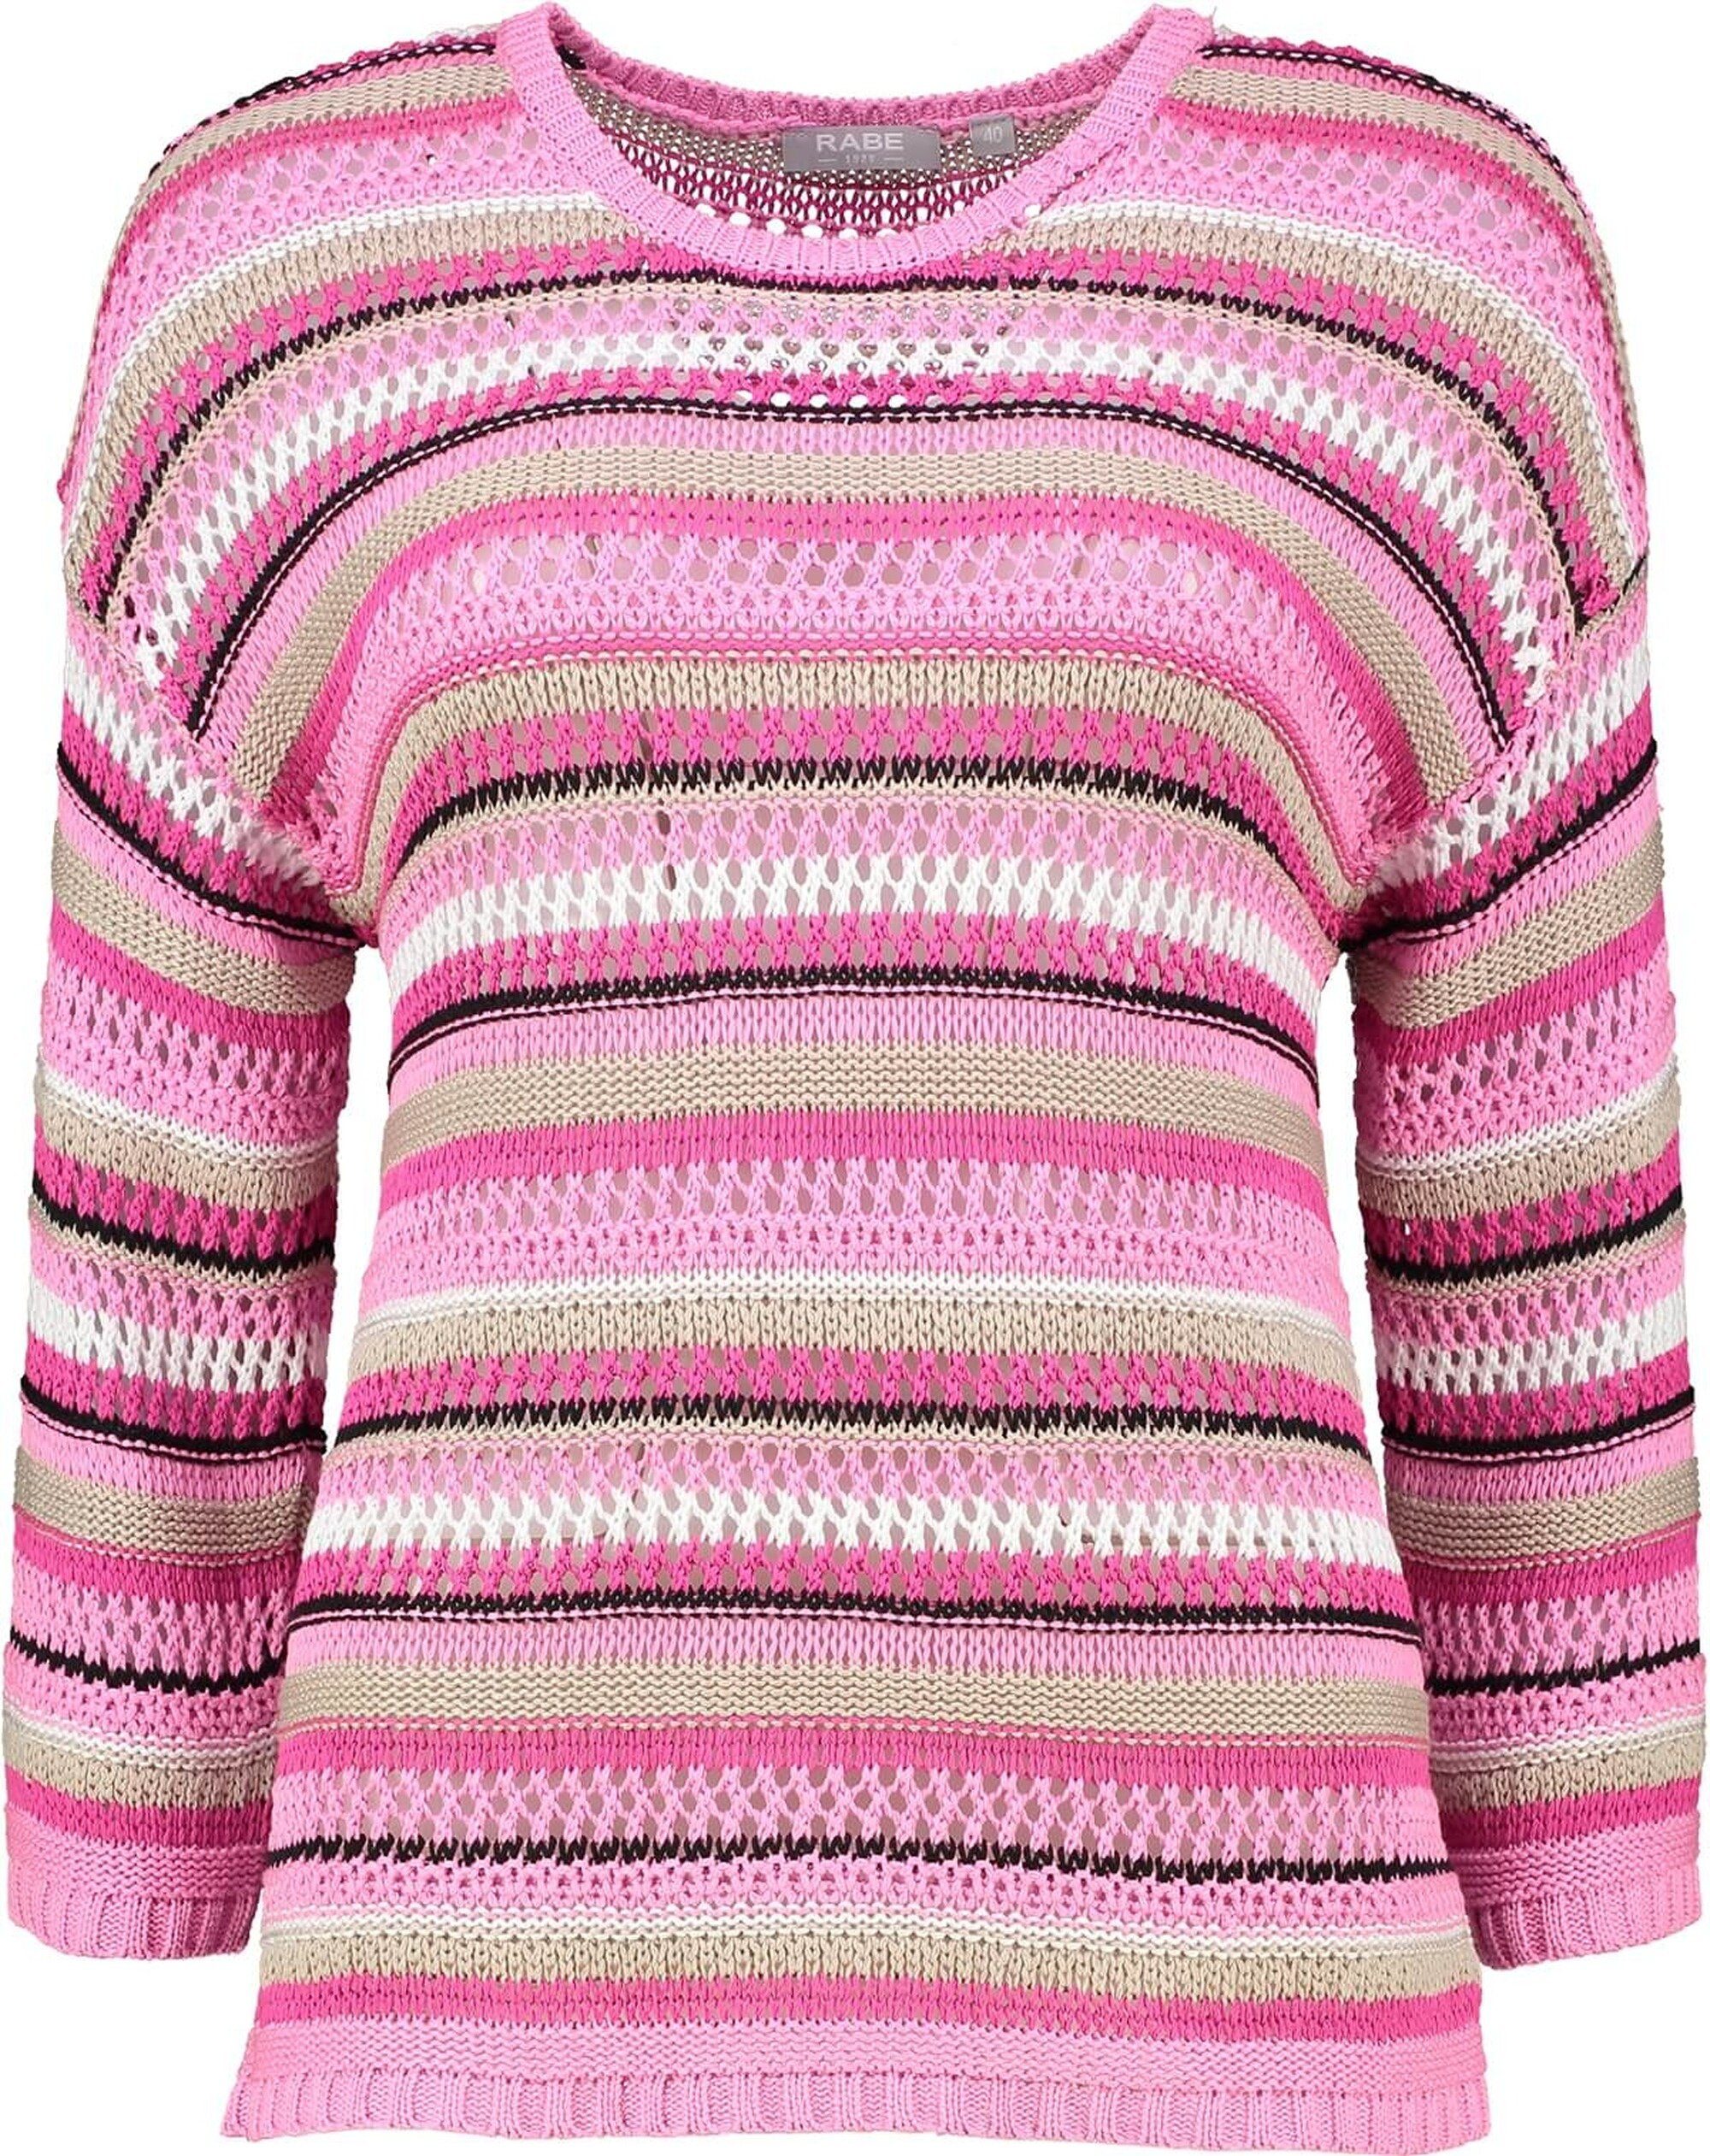 Strickpullover Rabe edlem Pullover pink gestreift Bändchengarn-Strickmuster RABE in